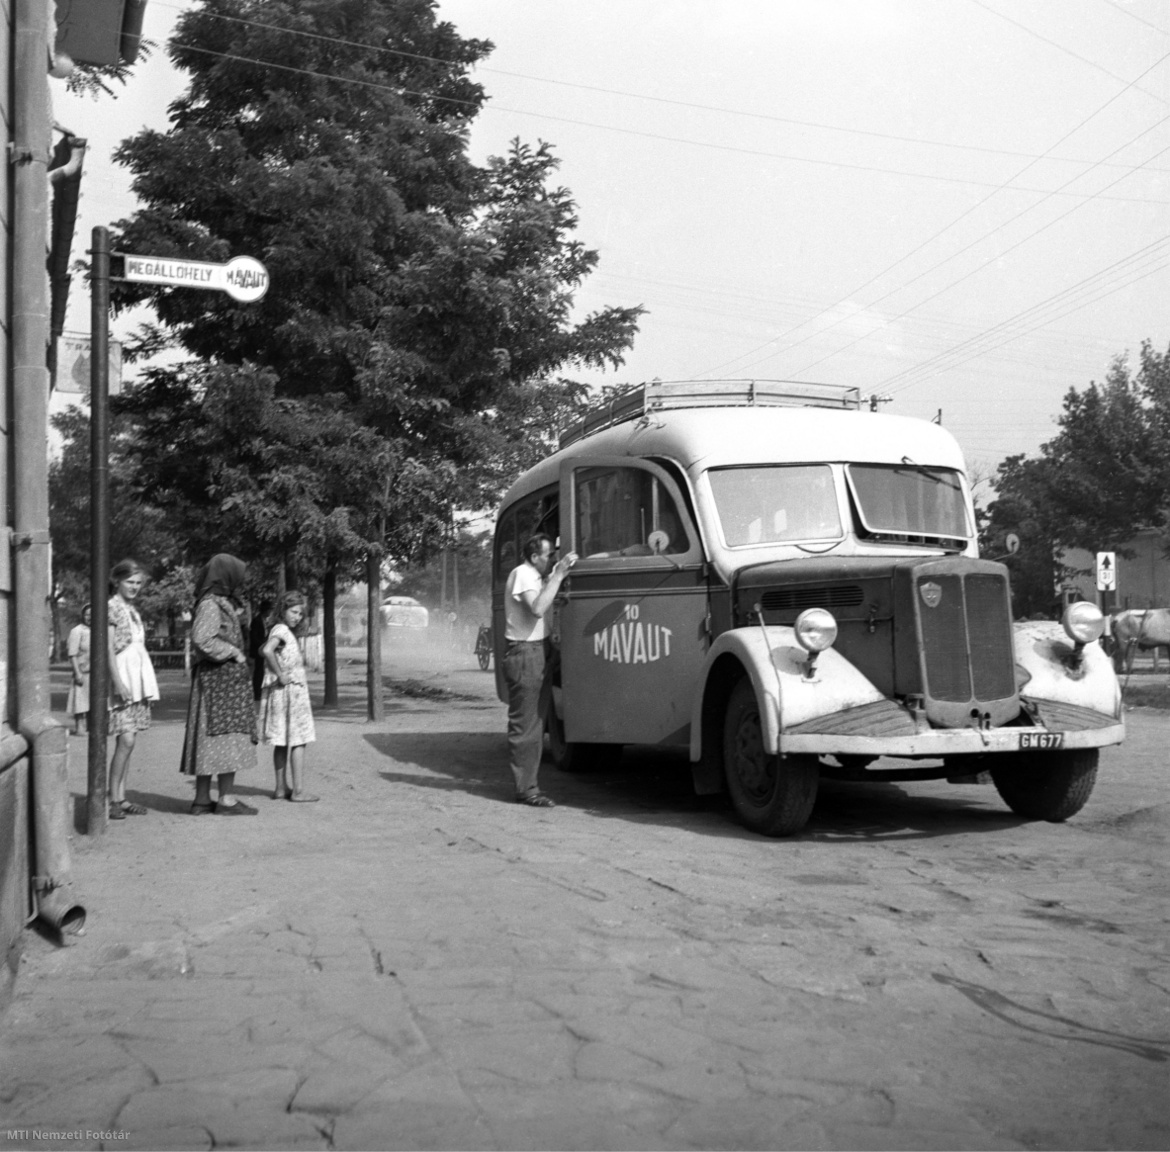 Jászapáti, 1955. szeptember 1. Megérkezik a Mávaut autóbusza a megállóba